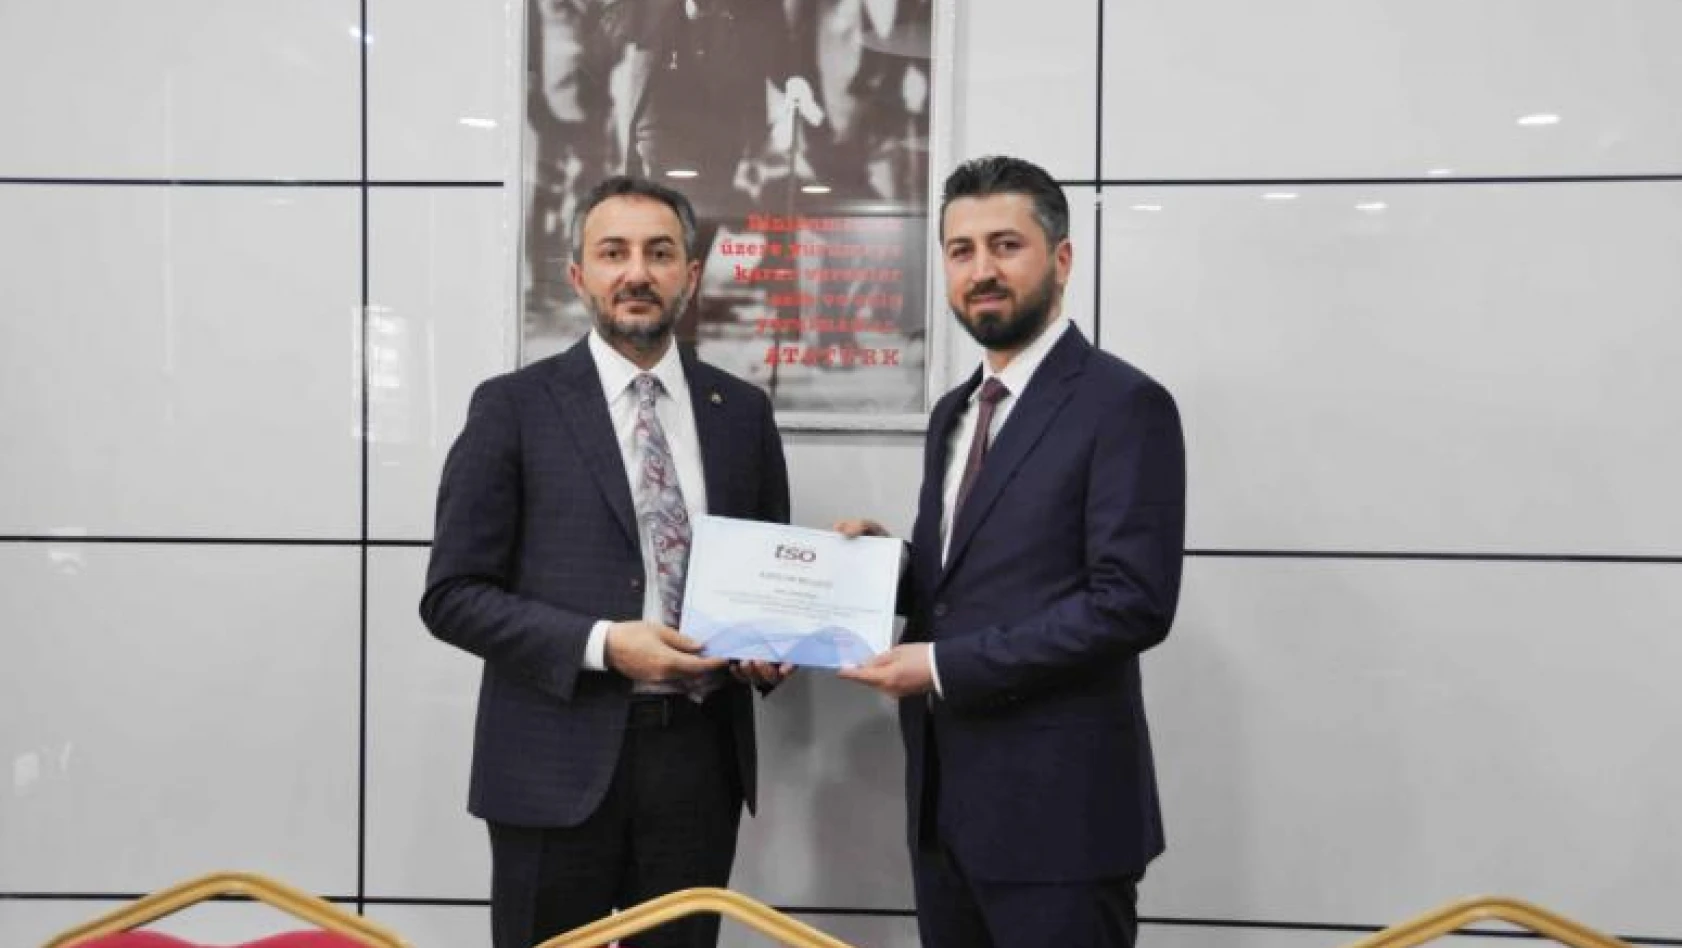 Kosgeb Girişimcilik Belgeleri ve Elazığ Tso Akademi Sertifikaları Hak Sahiplerine Törenle Verildi